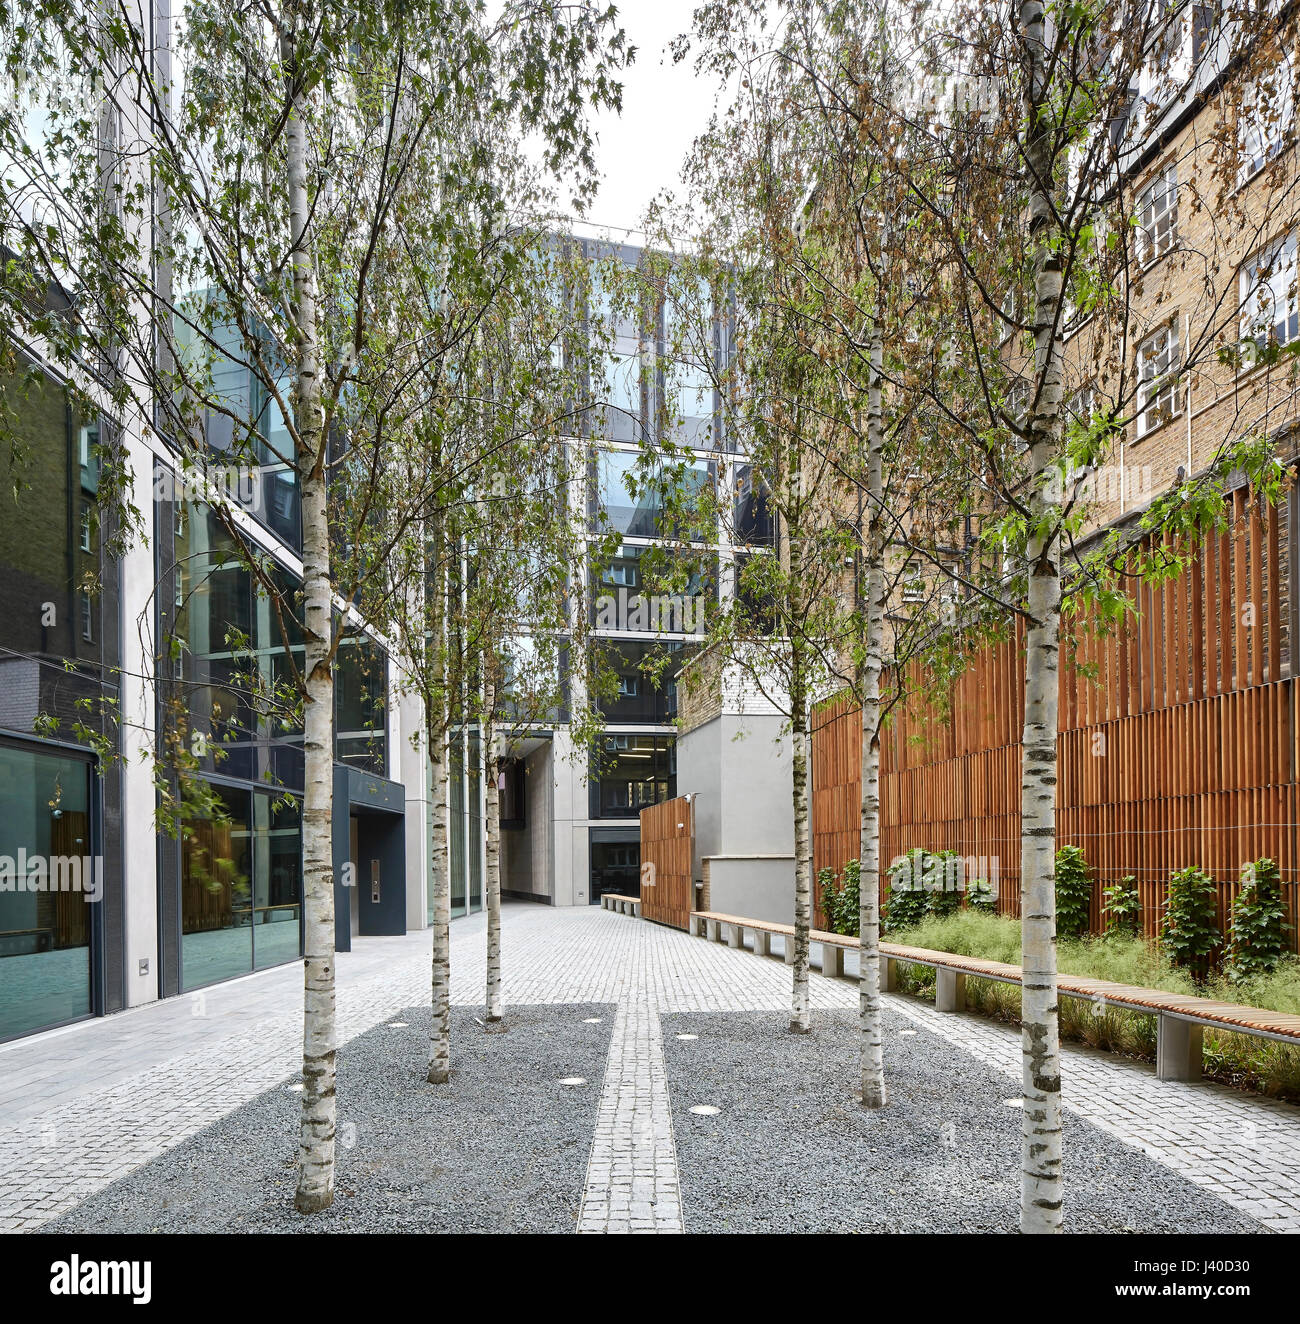 Begrünten Innenhof führt zu gated Unterführung. Chancery Lane, London, Vereinigtes Königreich. Architekt: Bennetts Associates Architects, 2015. Stockfoto